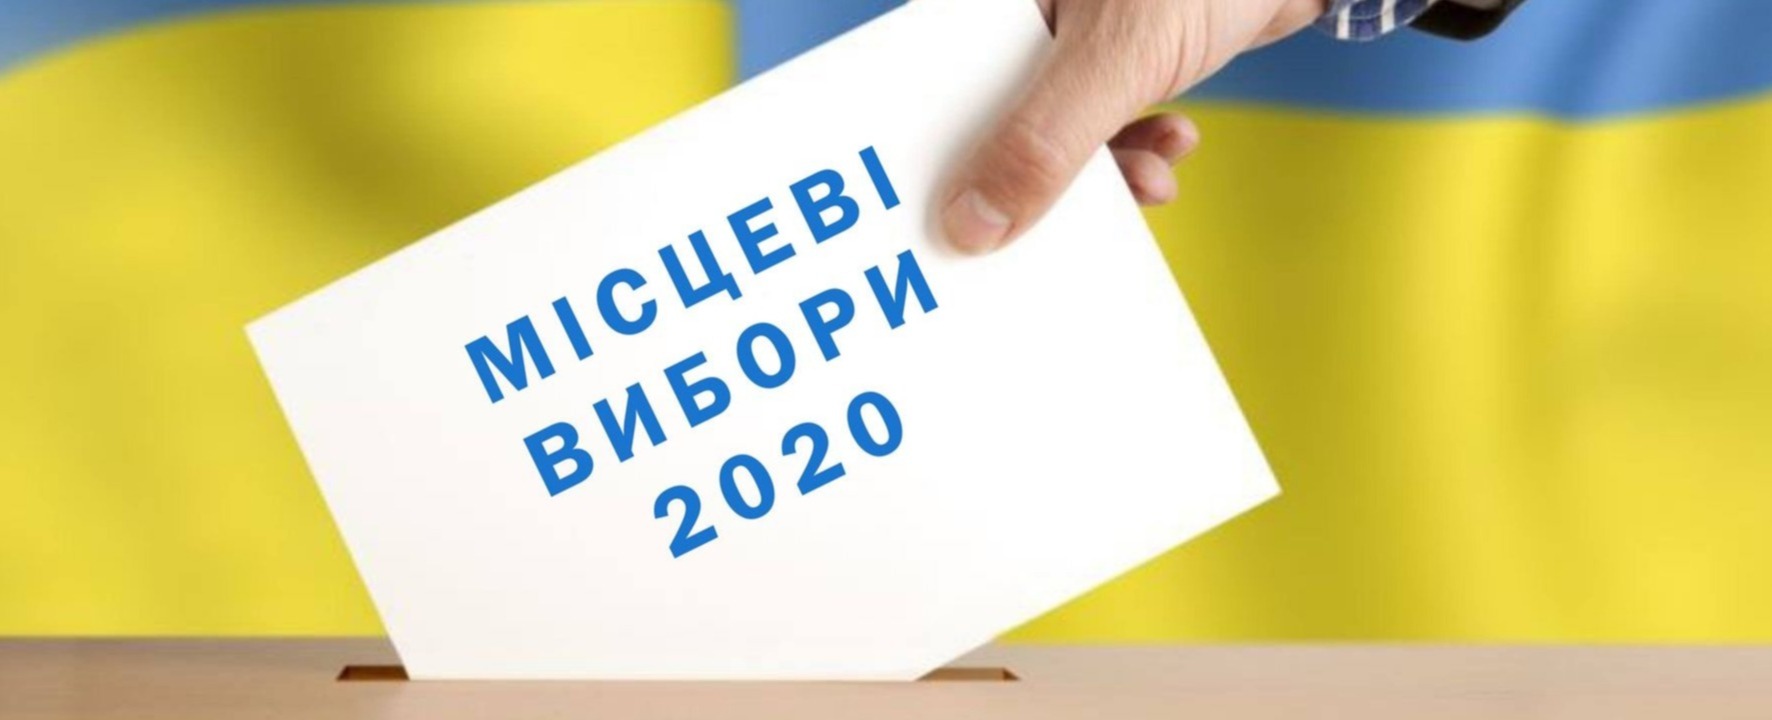 Понад 2,5 тисячі осіб зареєструвалися кандидатами в мери: найпопулярніша Одеса, а Київ лише на третьому місці  